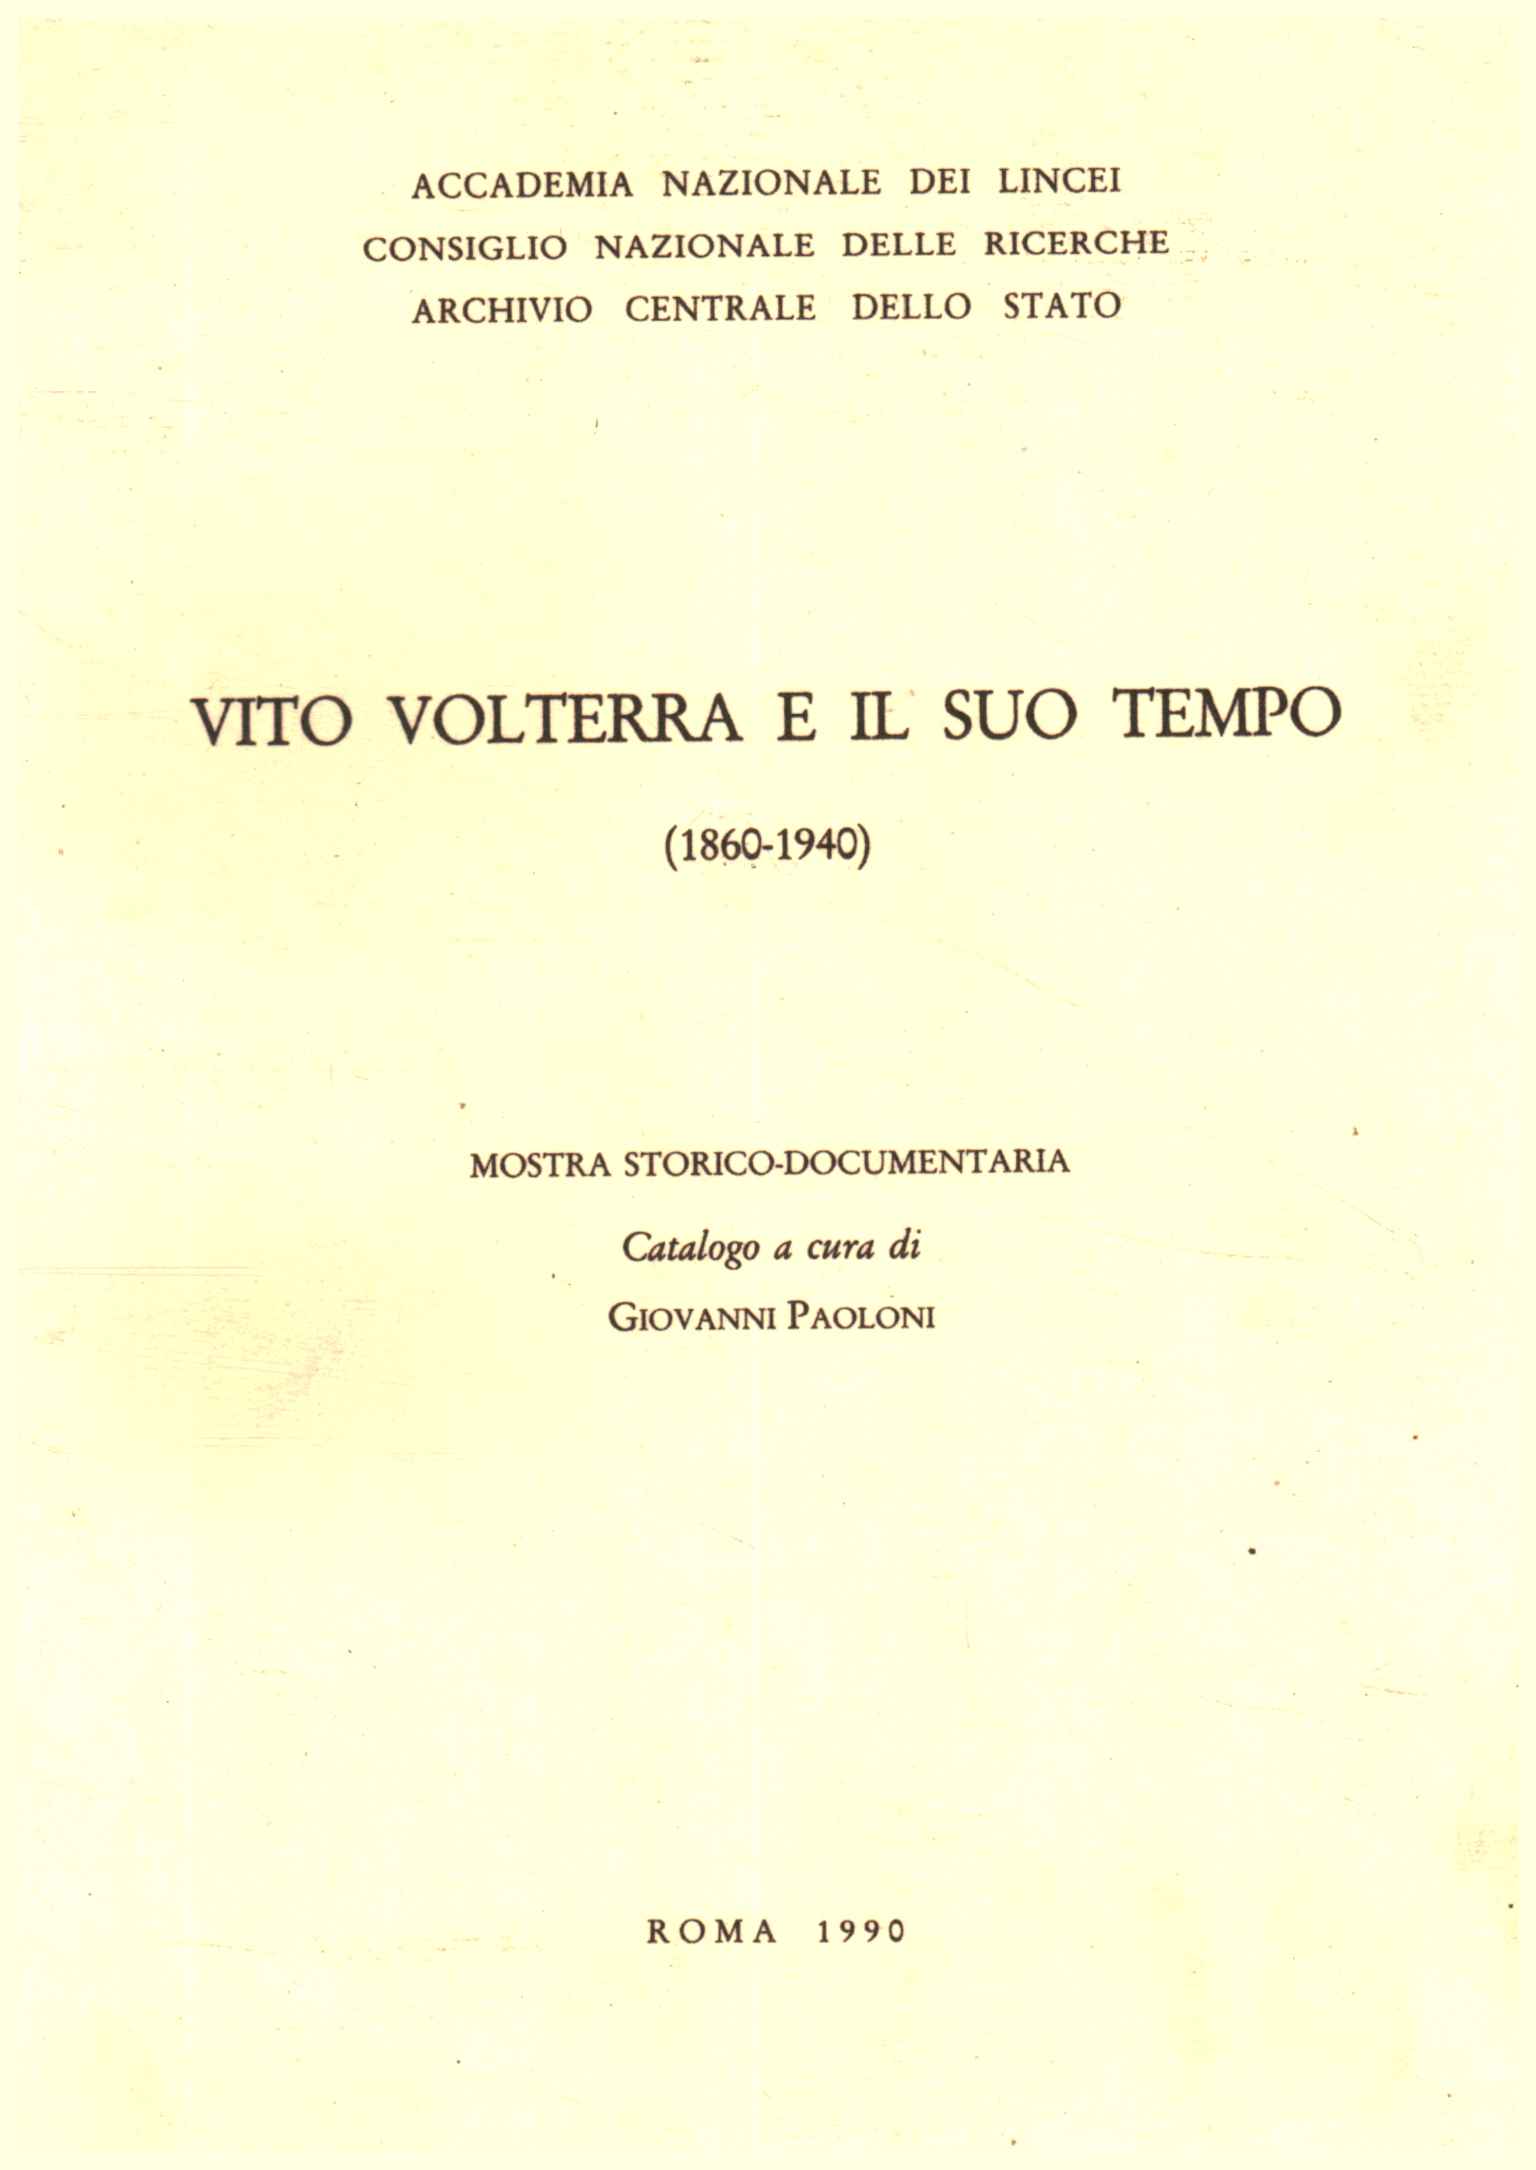 Vito Volterra y su época (1860-194)